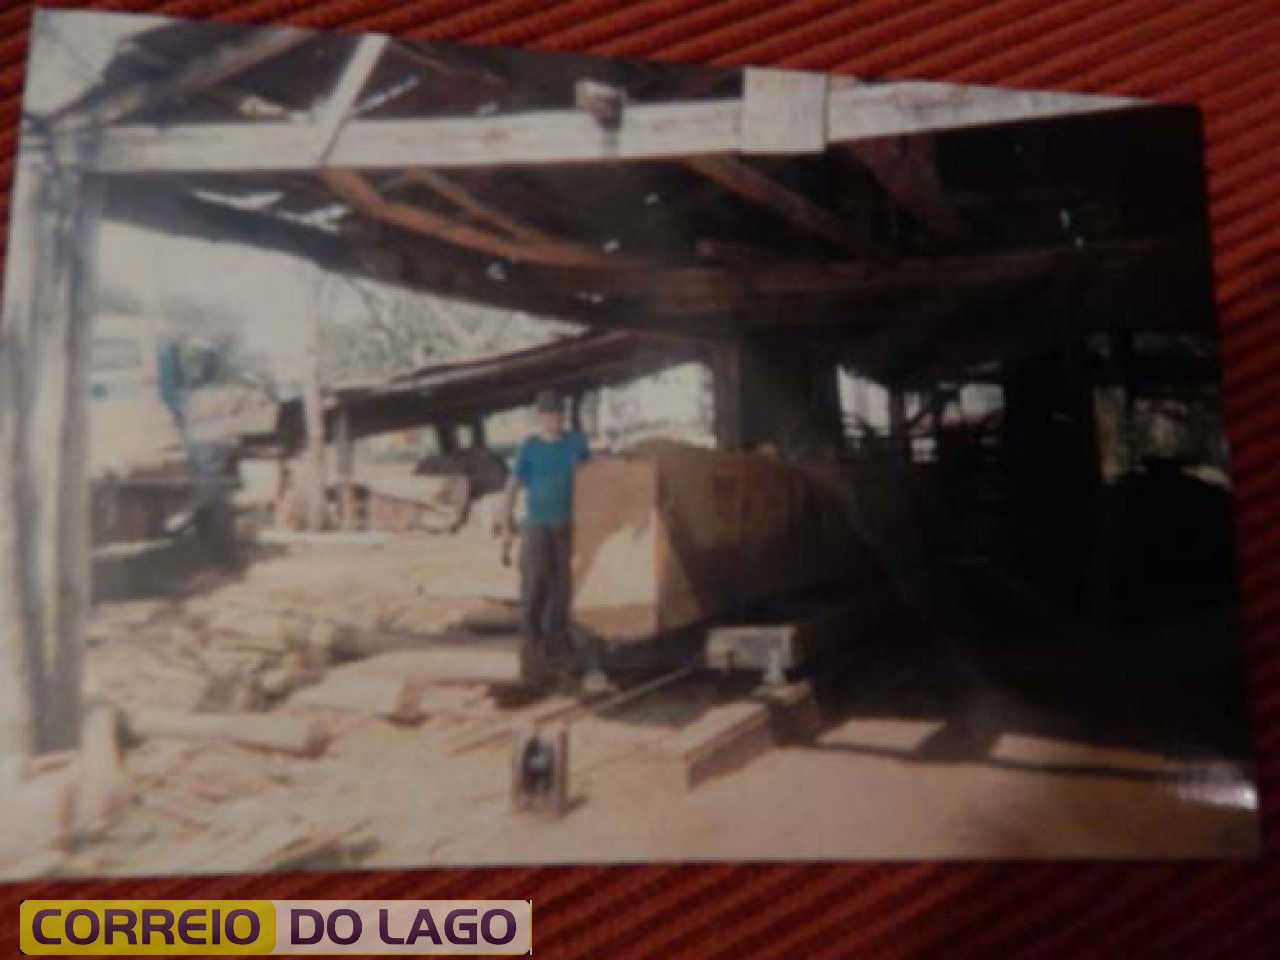 Tora de Ipê sendo serrada na madeireira Becker. Década de 1990. Paulo Becker aparece na foto.